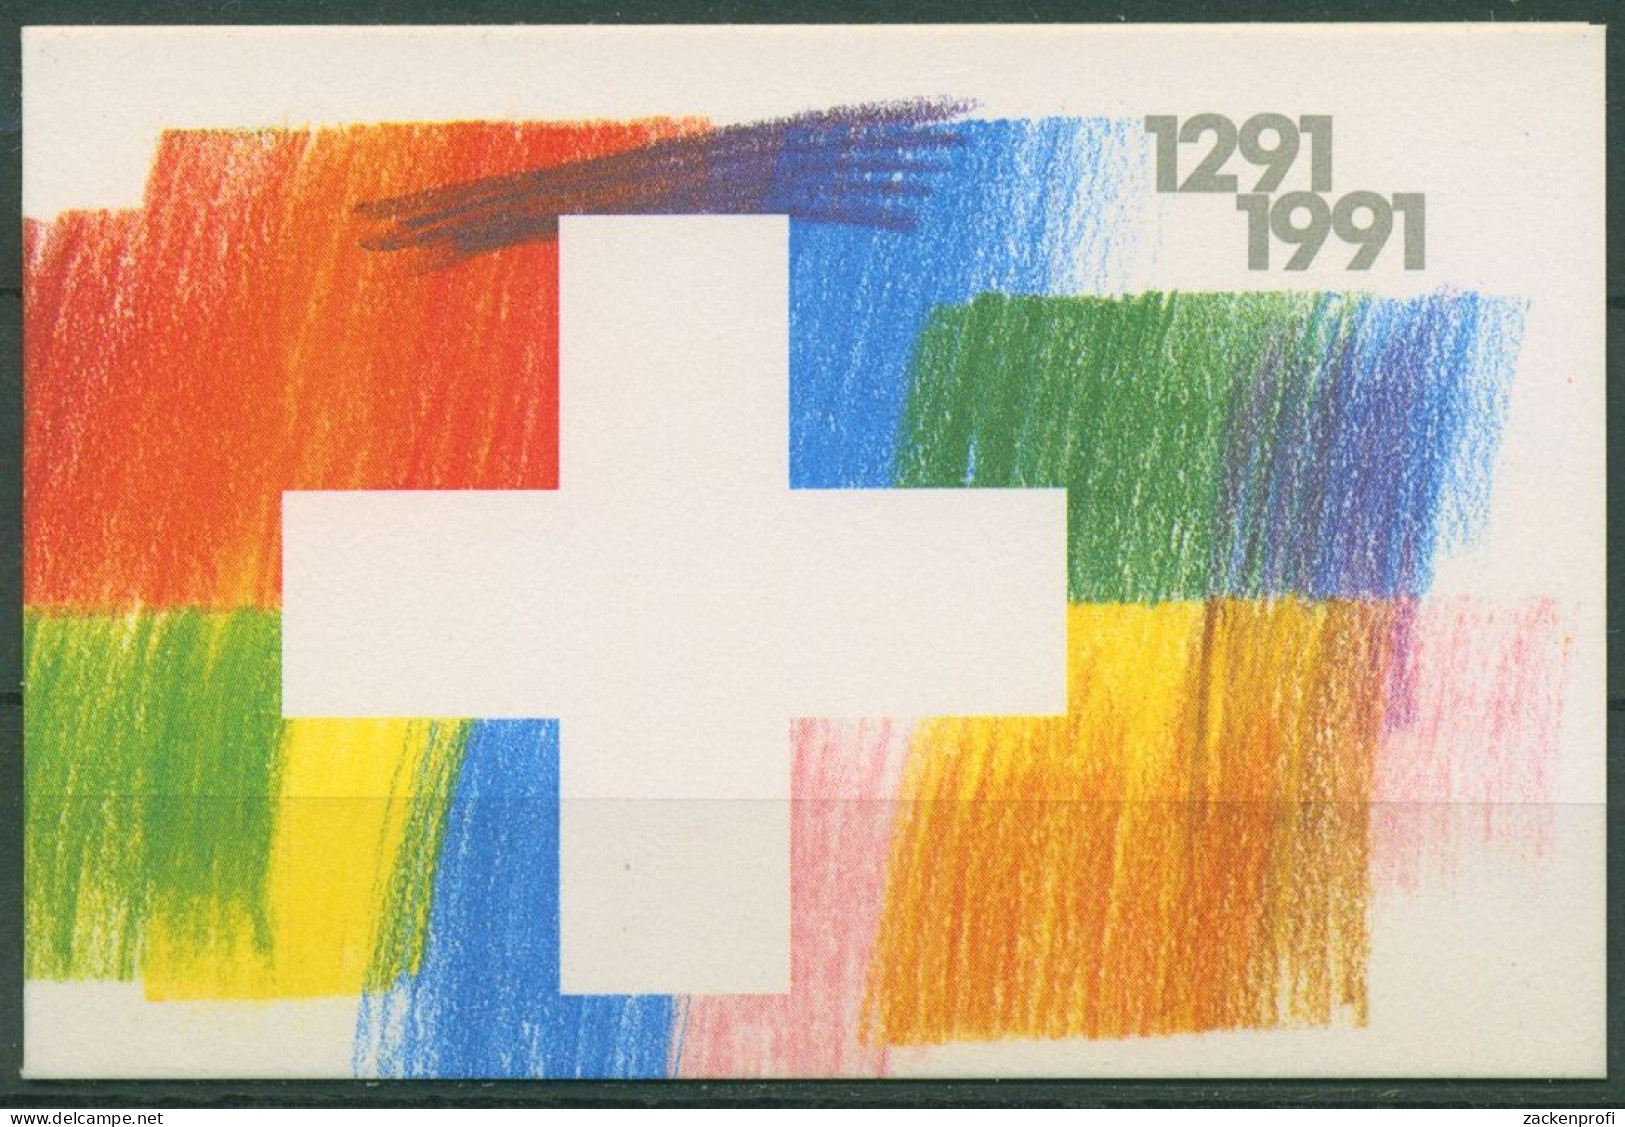 Schweiz 1991 Eidgenossenschaft Markenheftchen 89 Postfrisch (C62174) - Libretti